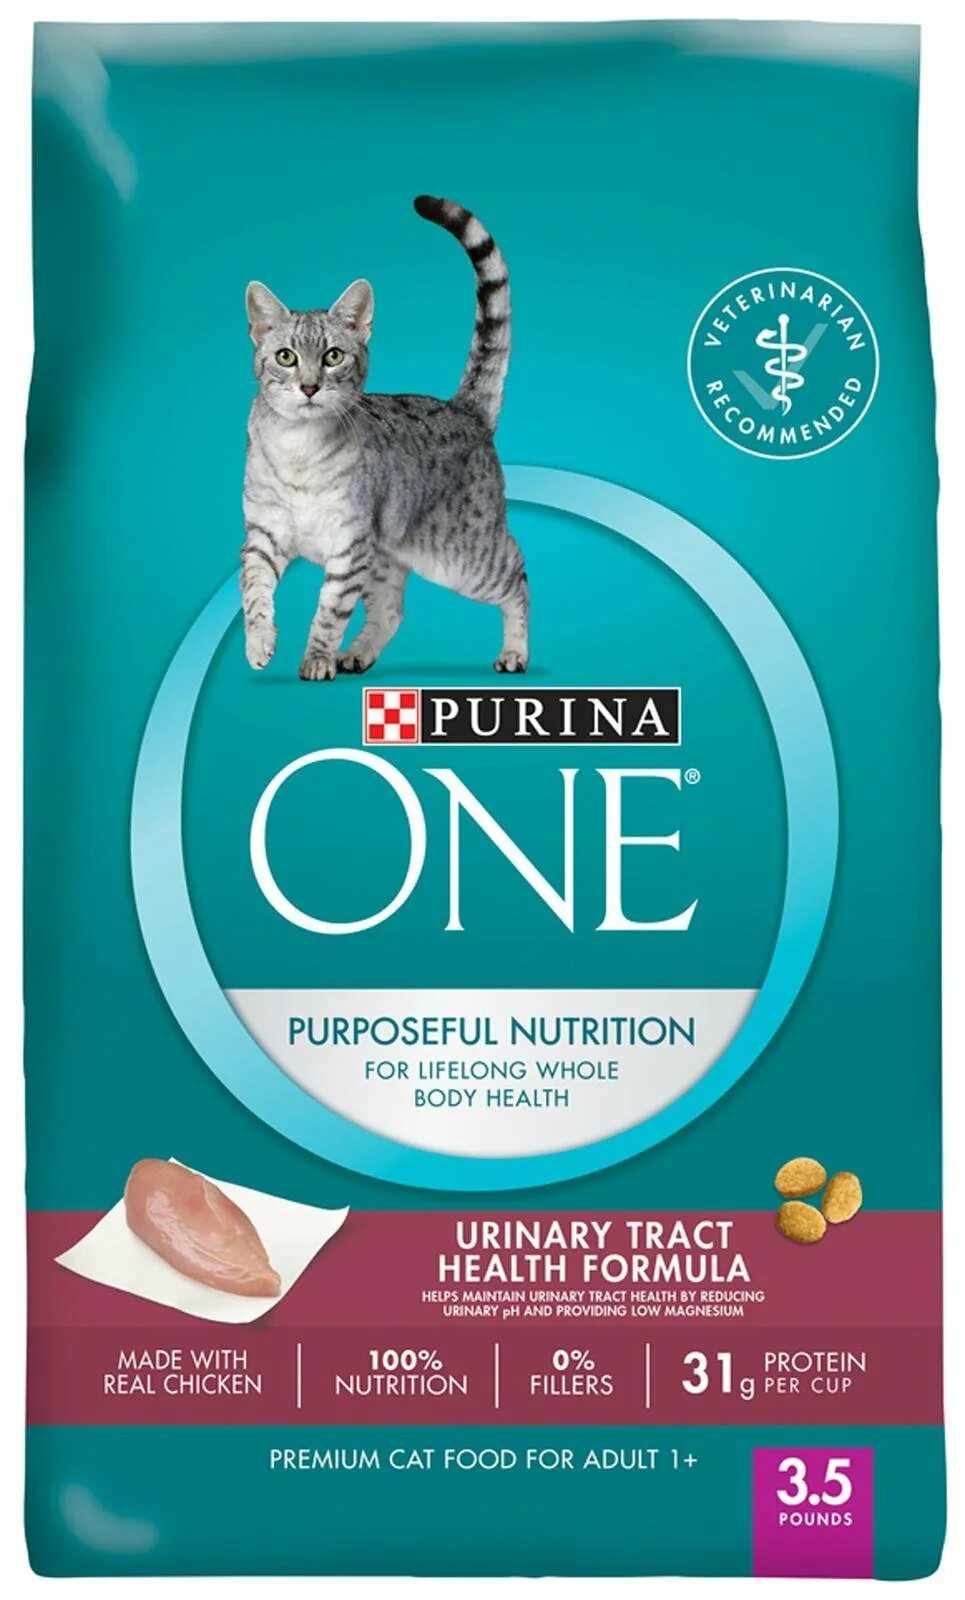 Purina urinary для кошек